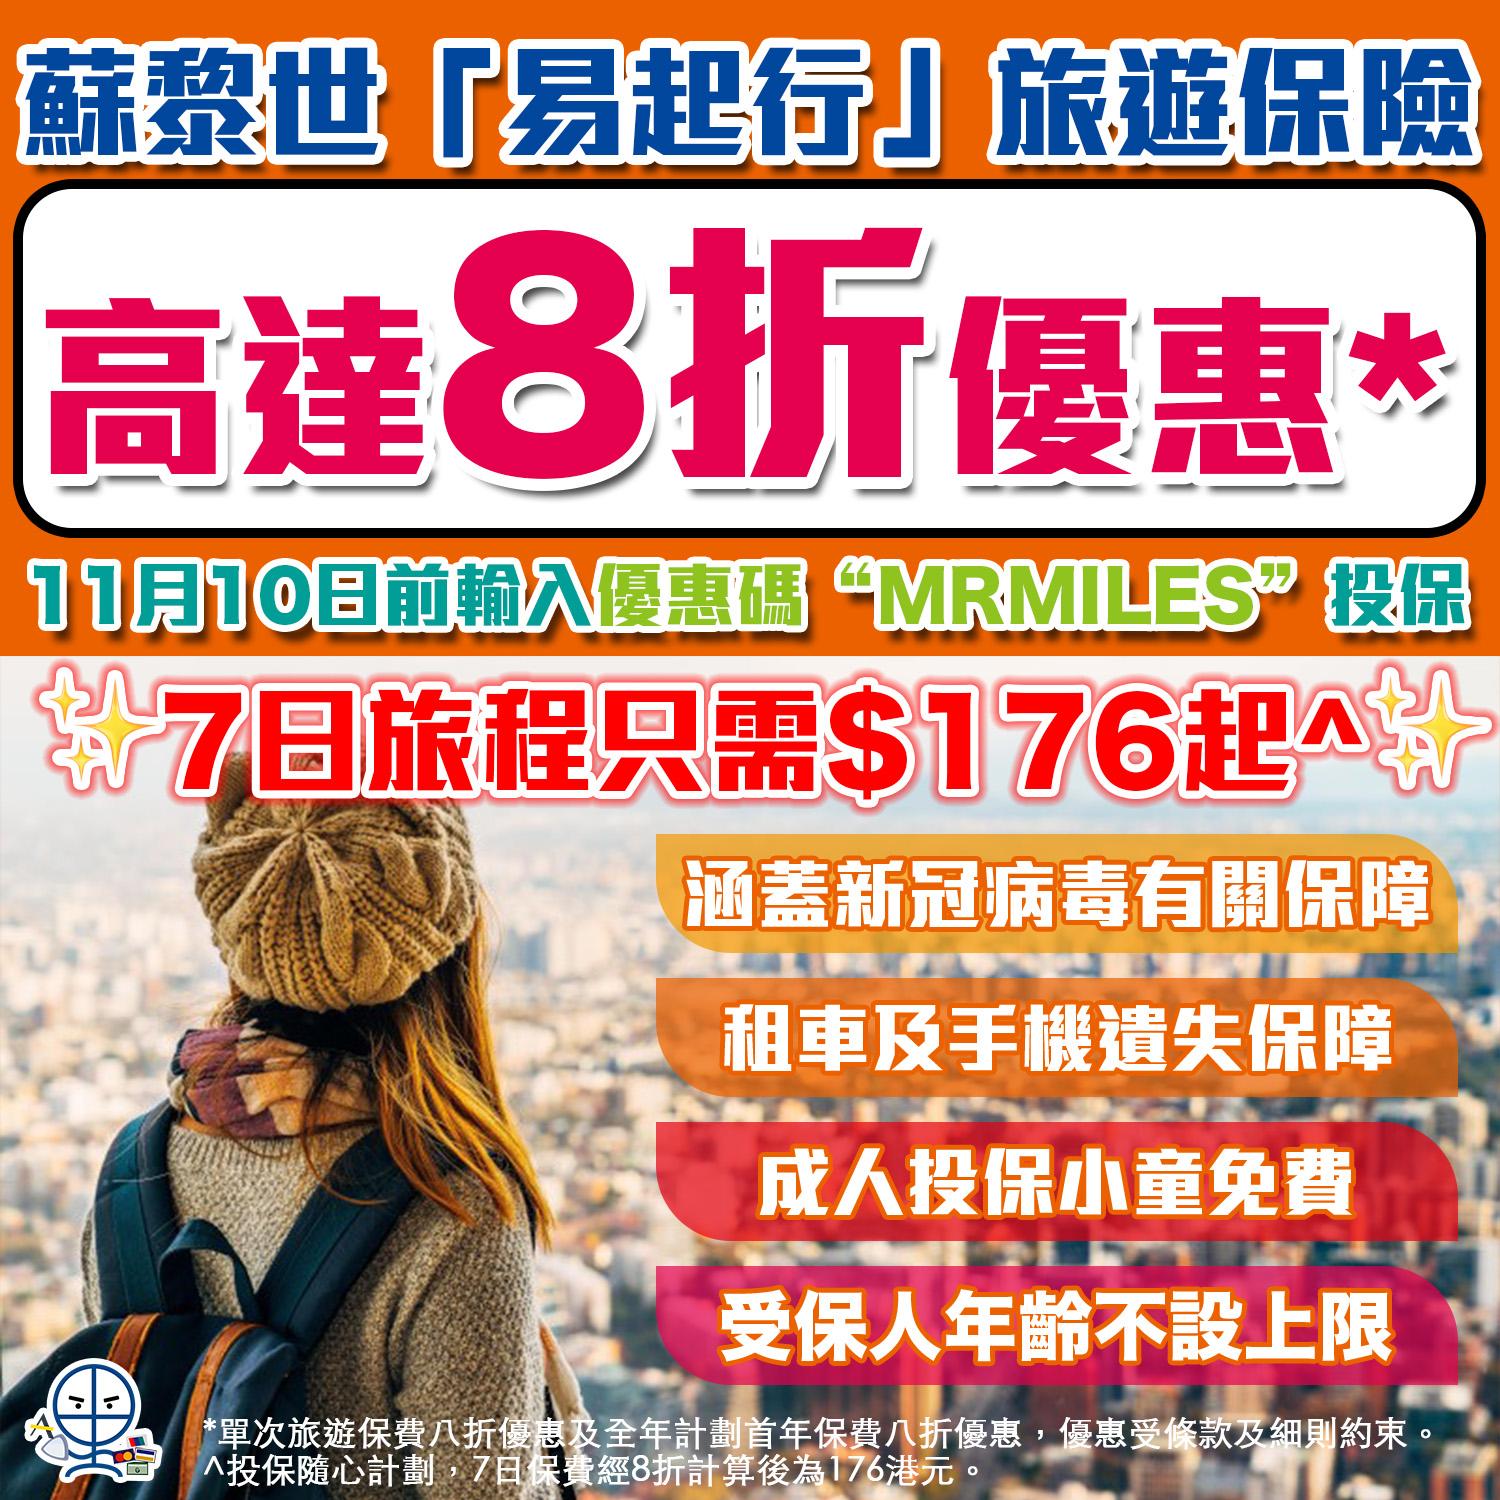 【蘇黎世「易起行」旅遊保險】快閃優惠7日旅遊保只需HK$176起🔥特點：涵蓋新冠病毒保障、受保人年齡不設上限、成人投保小童免費‼️